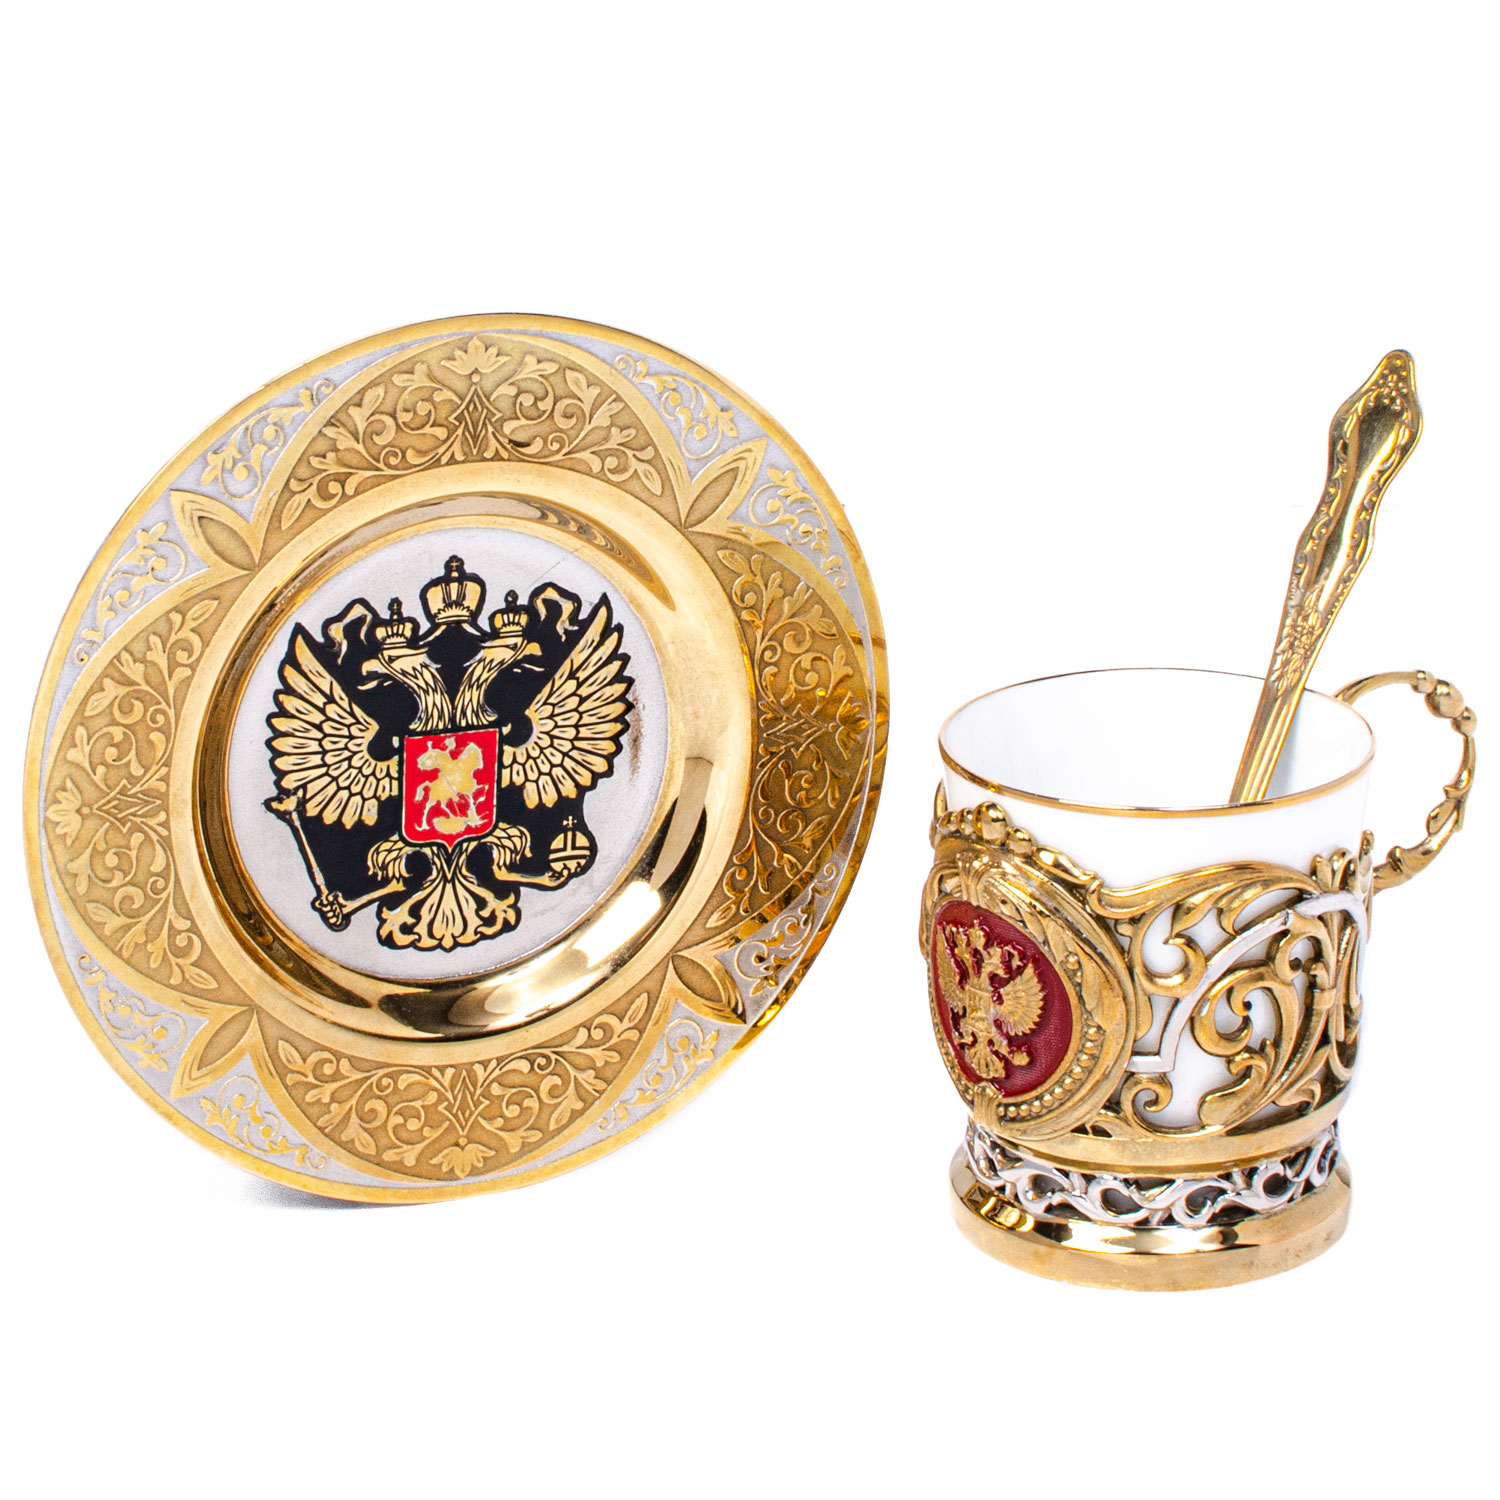 Кофейный набор "Россия" Златоуст - артикул: 330012 | Мосподарок 